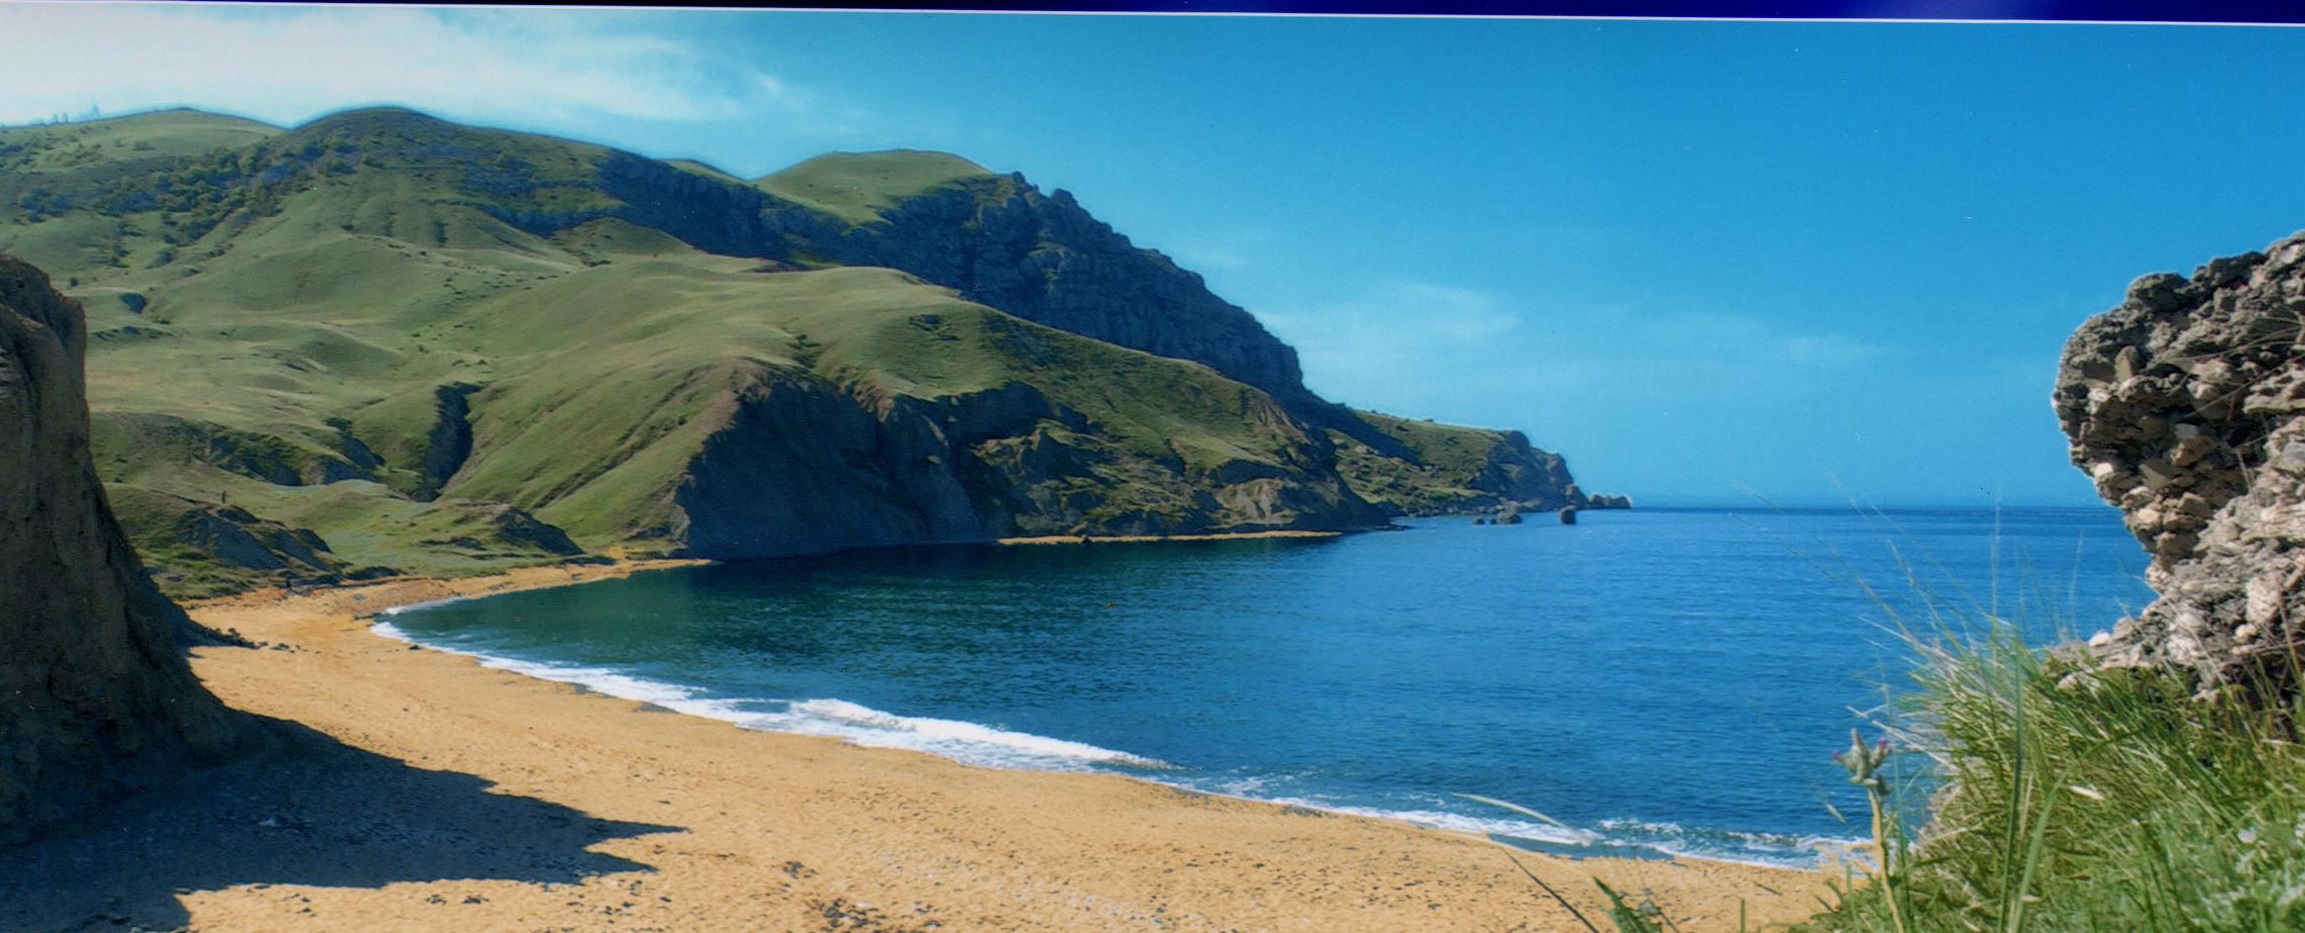 Меганом гора пляж